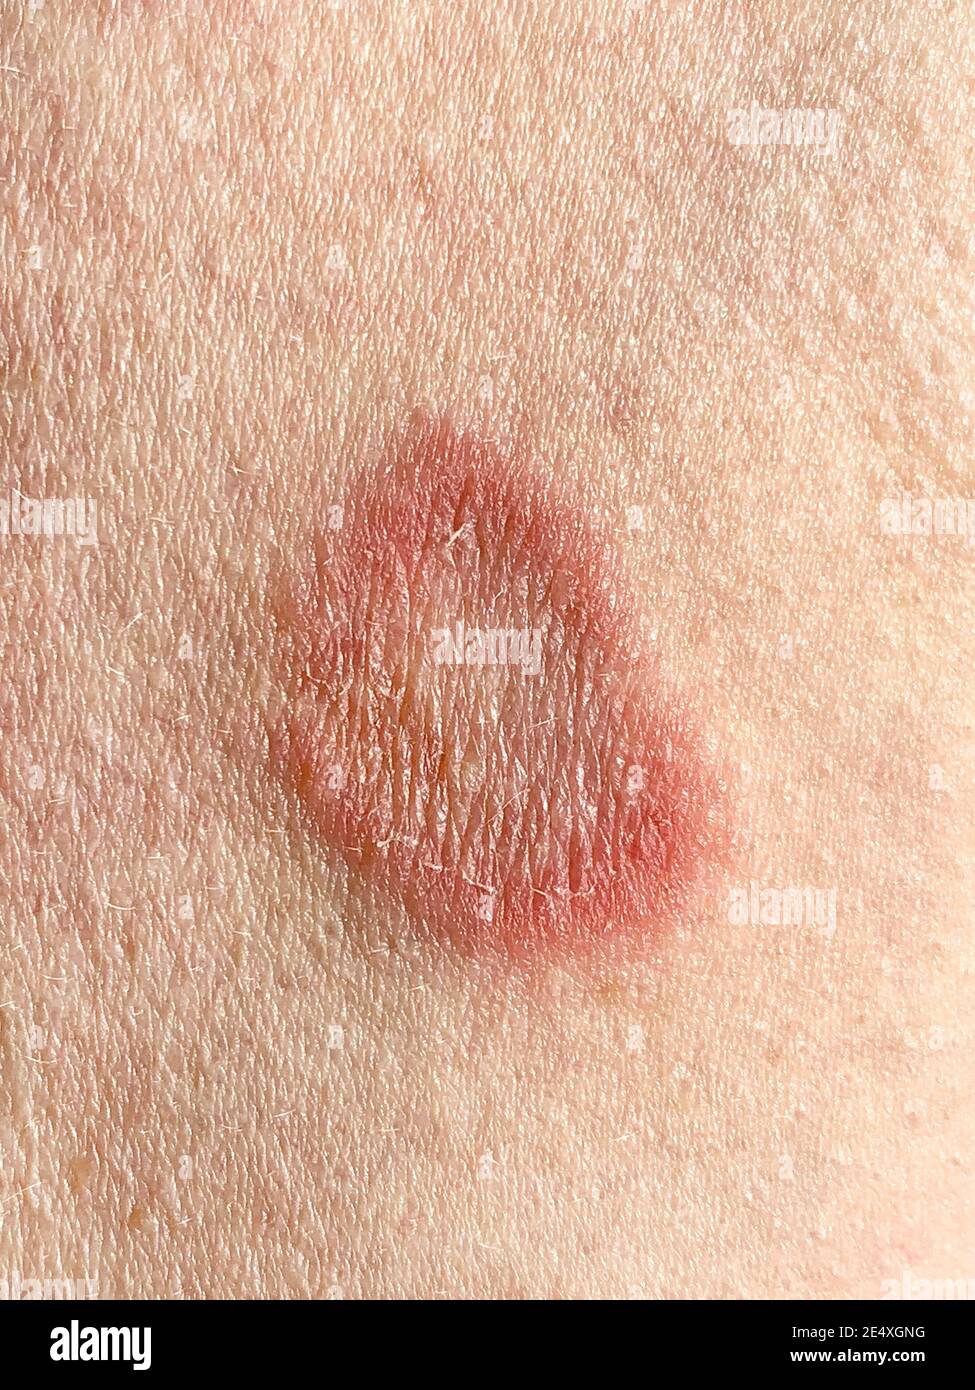 Infección de la tiña en el brazo de un varón adulto caucásico. Esta infección micótica de la piel causa picazón, enrojecimiento y piel escamosa y los anillos se llaman pl Foto de stock